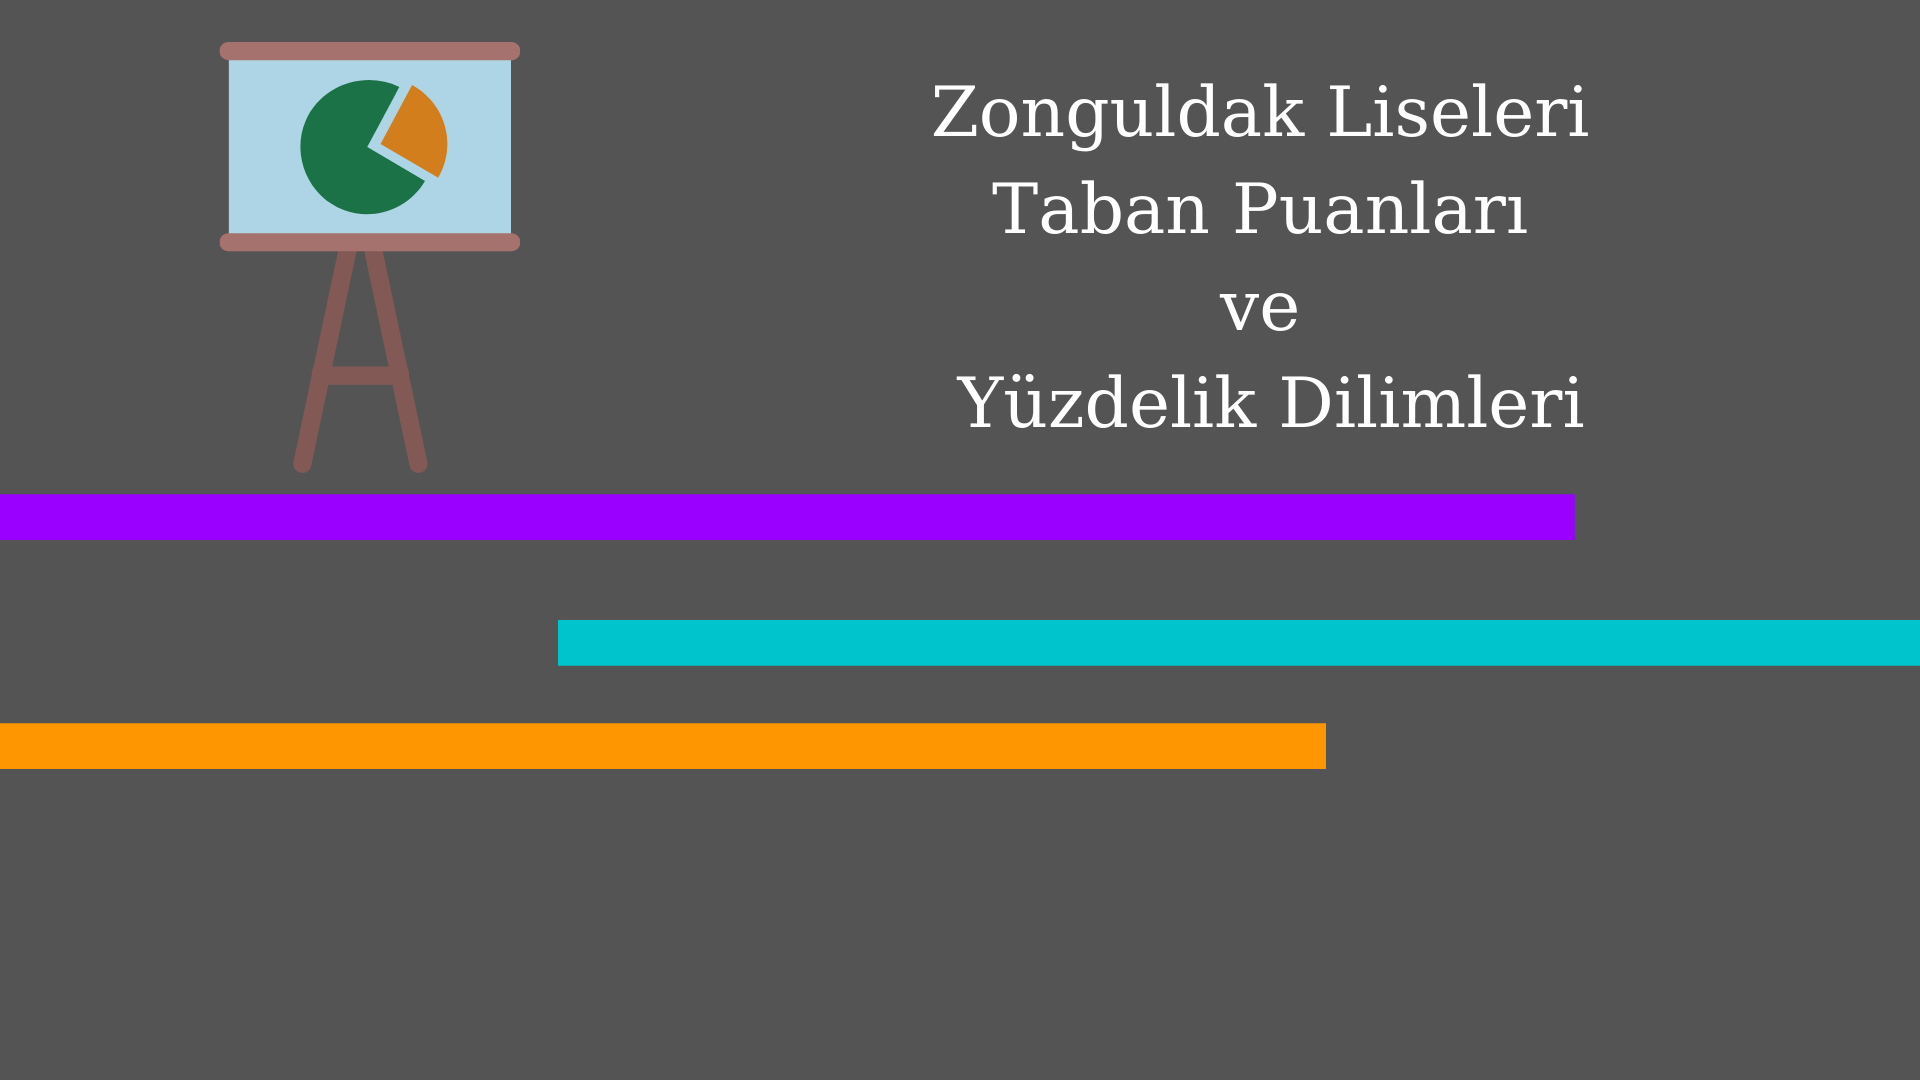 Zonguldak Liseleri Taban Puanları ve Yüzdelik Dilimleri 2021